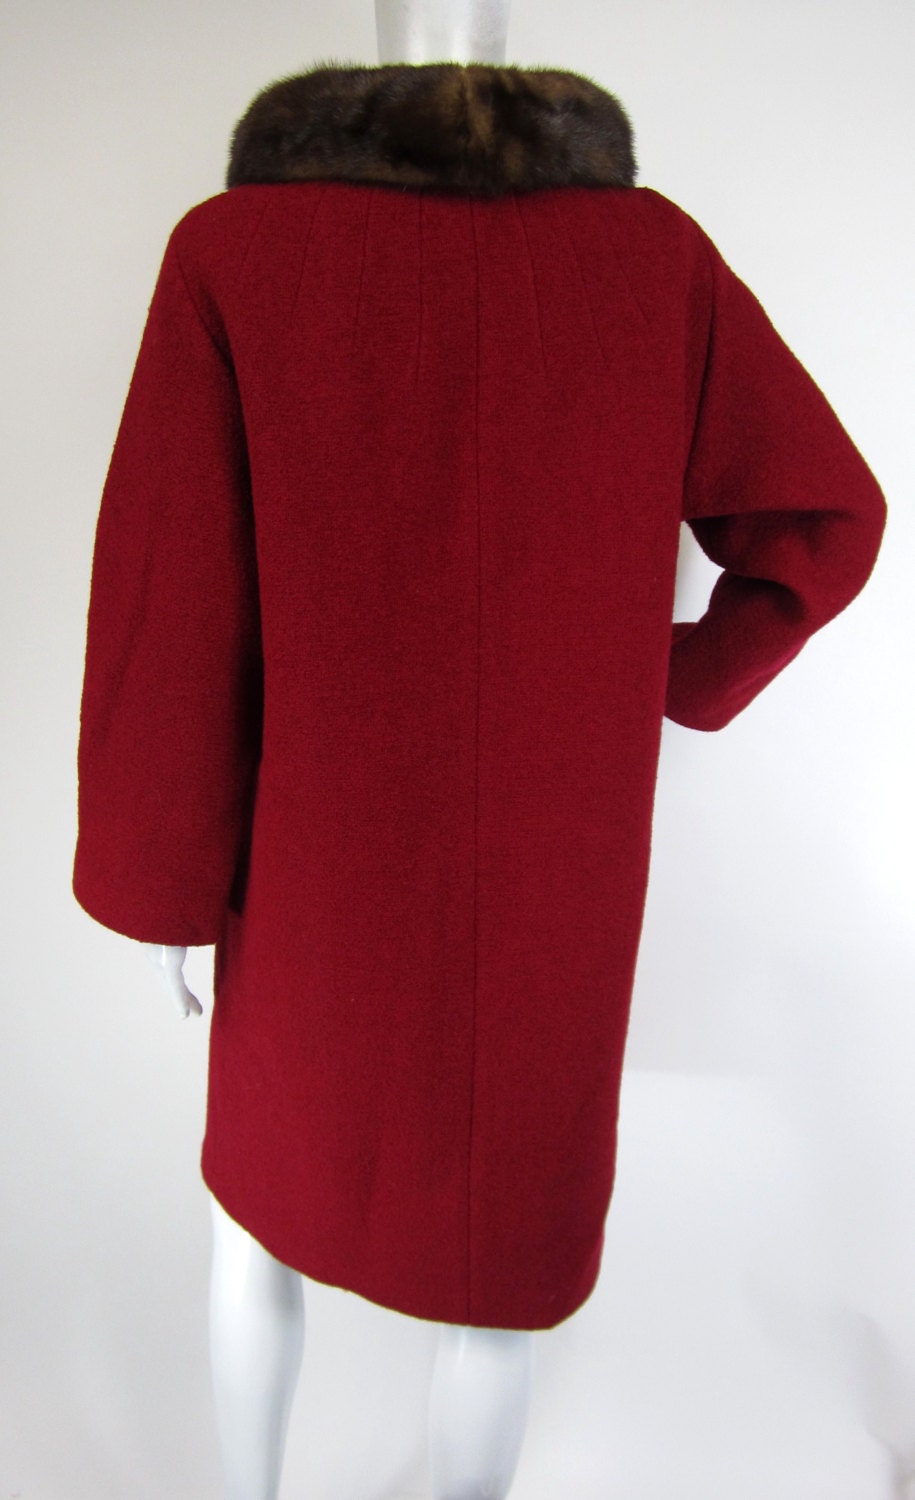 Vintage 1960s Coat / 60s Coat / Red Wool / Mink Fur Collar